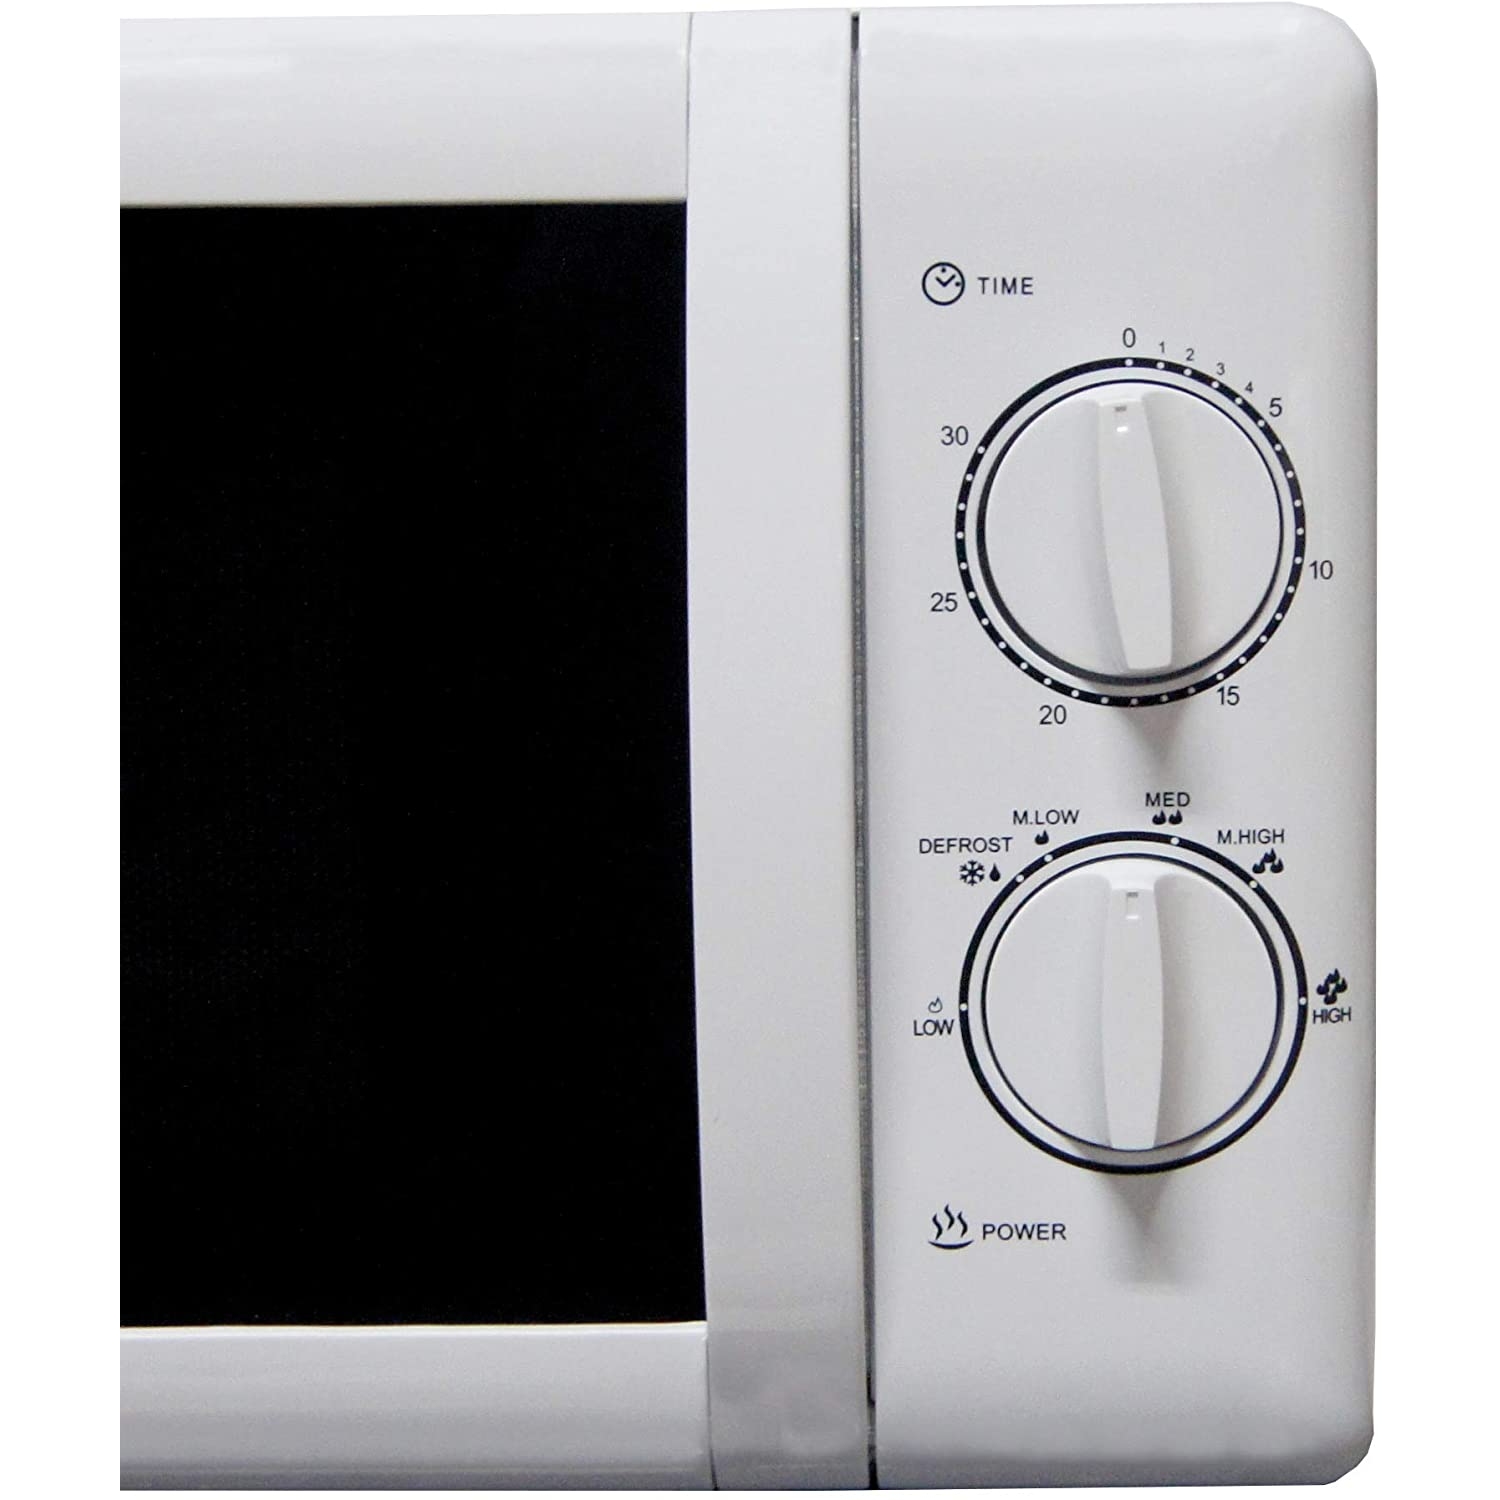 Igenix solo manual microwave 20L - 0